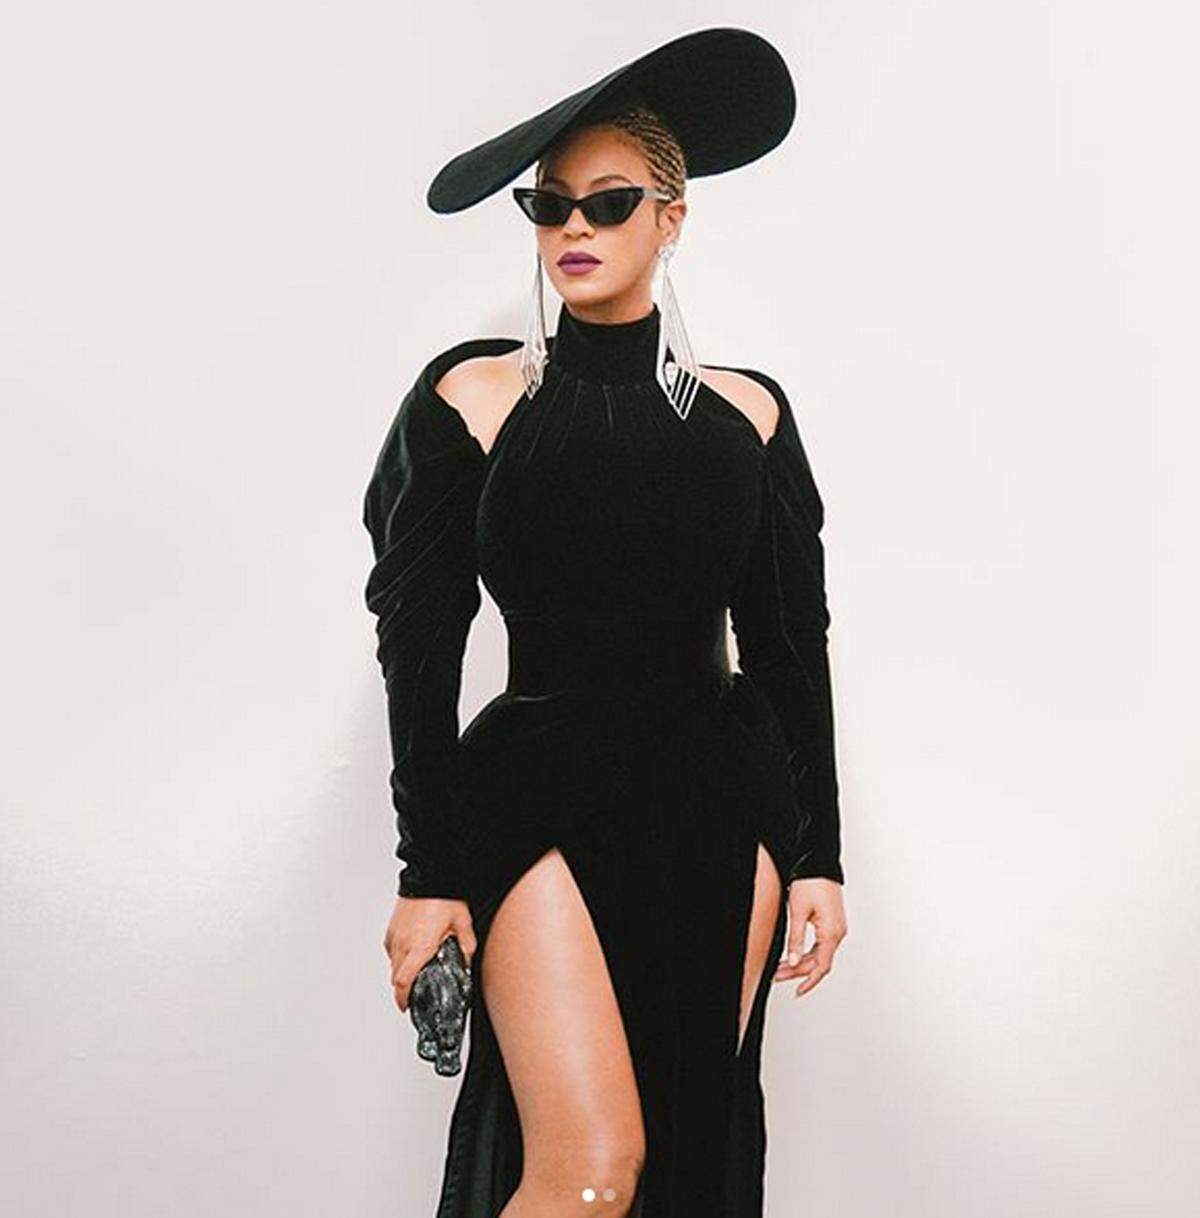 Durchgestylt bis in die Haarspitzen zeigte sich Sängerin Beyonce bei den Grammy Awards. Dabei stach unter anderem ein Trend ins Auge, der auch bei den meisten Shows der internationalen Laufstege nicht fehlte: Ohrringe in XXL-Version.